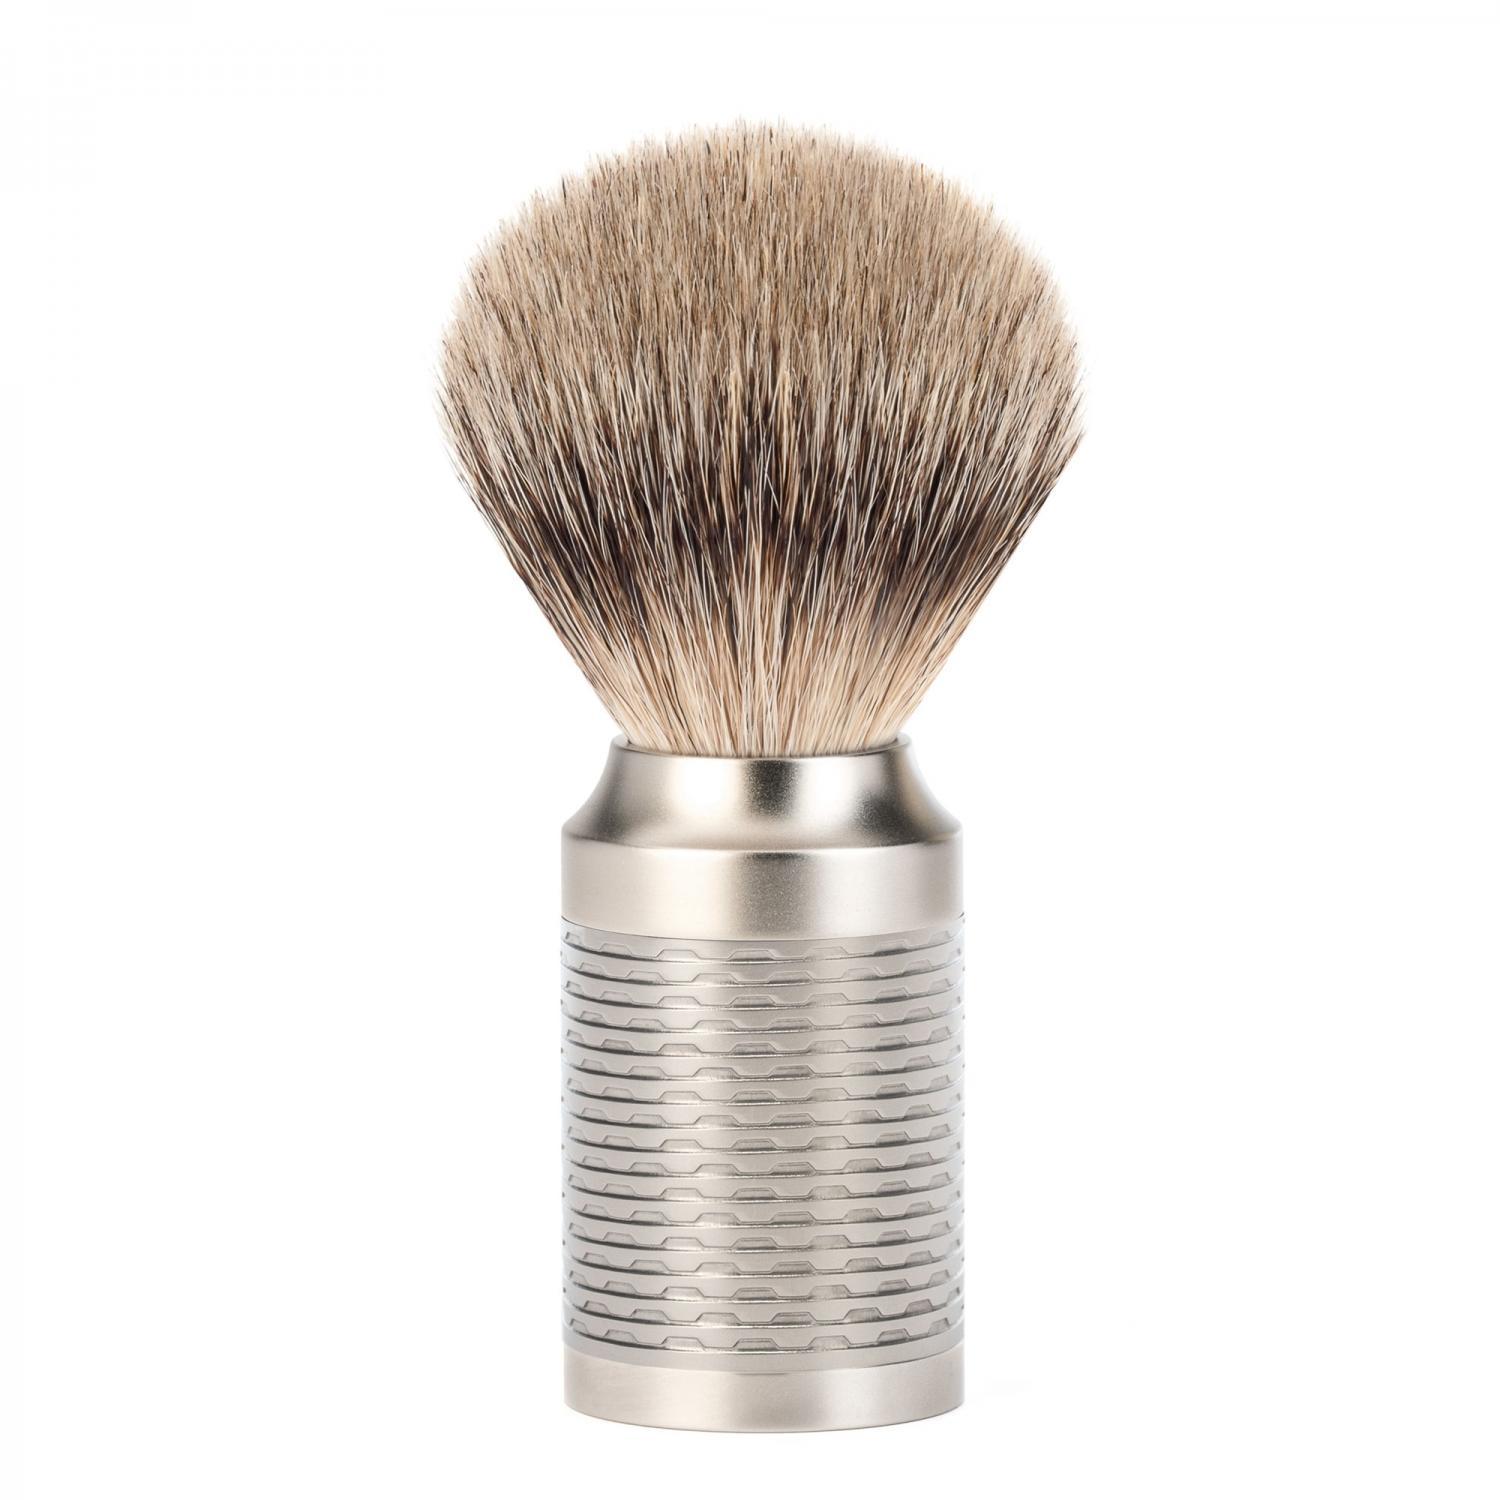 Conjunto de barbear MÜHLE Rocca Silver Matt aço inoxidável de 3 peças Silvertip Badger e lâmina de segurança, pincel de barbear